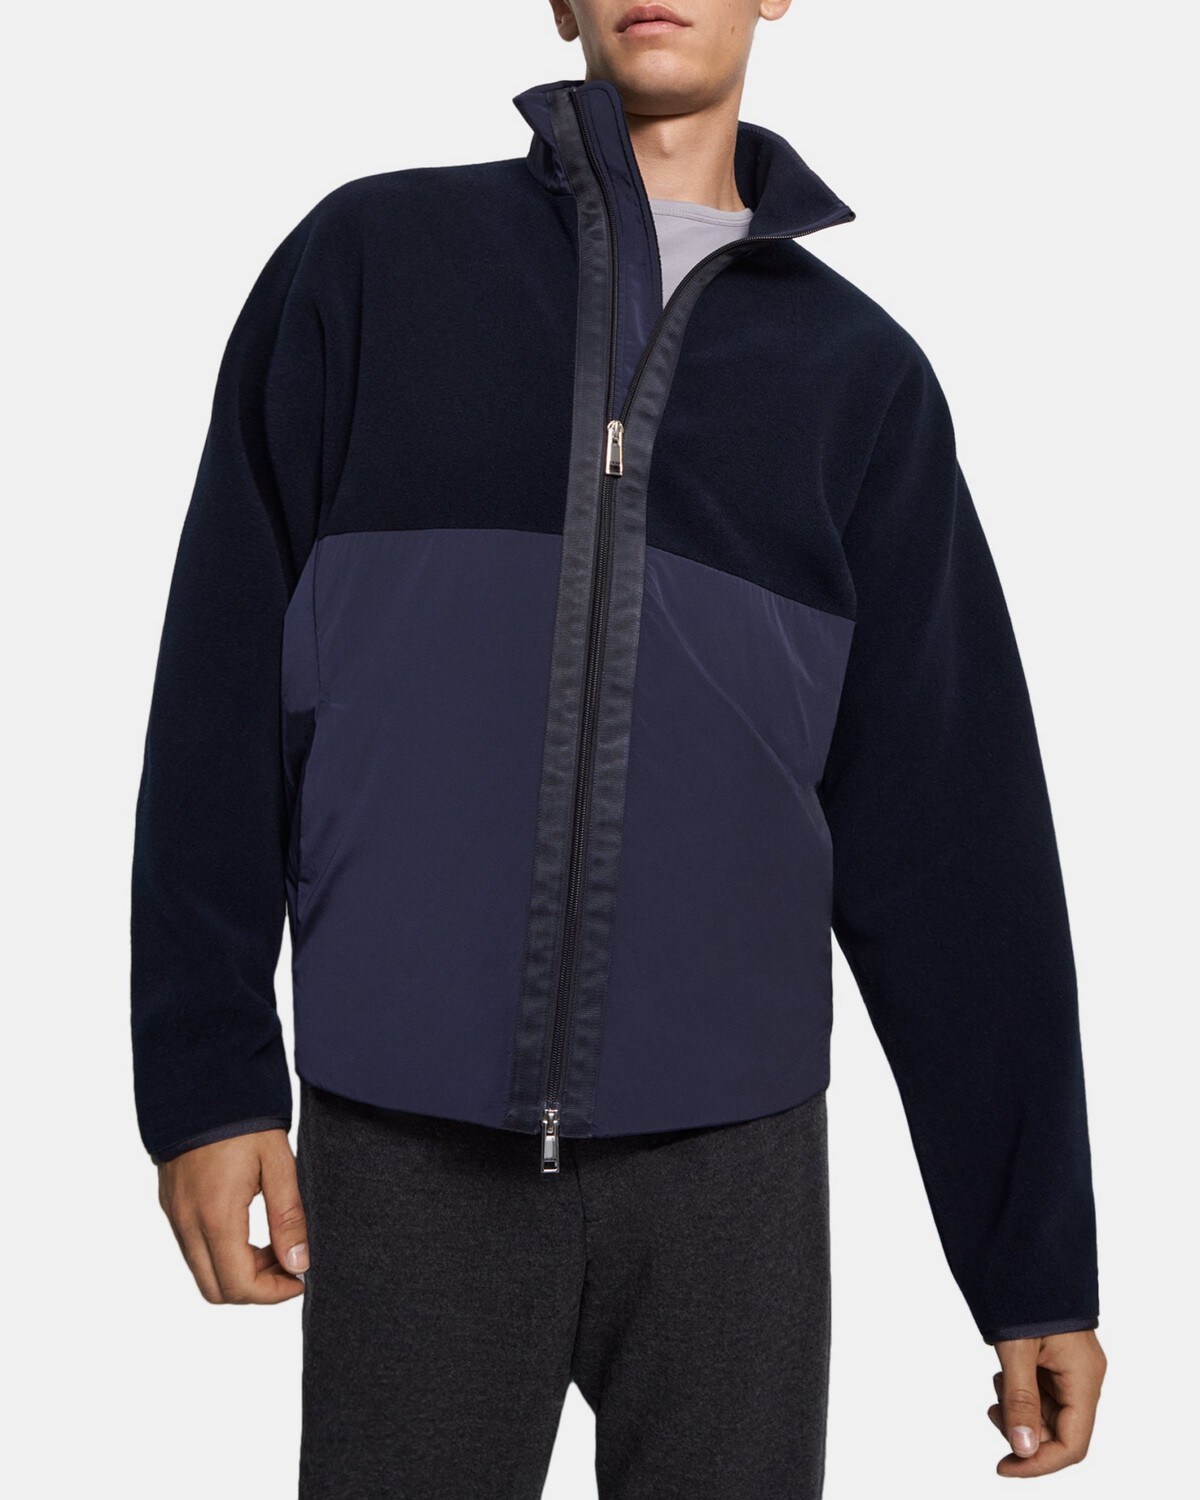 띠어리 맨 재킷 Theory Zip Jacket in Recycled Fleece,BALTIC/BALTIC